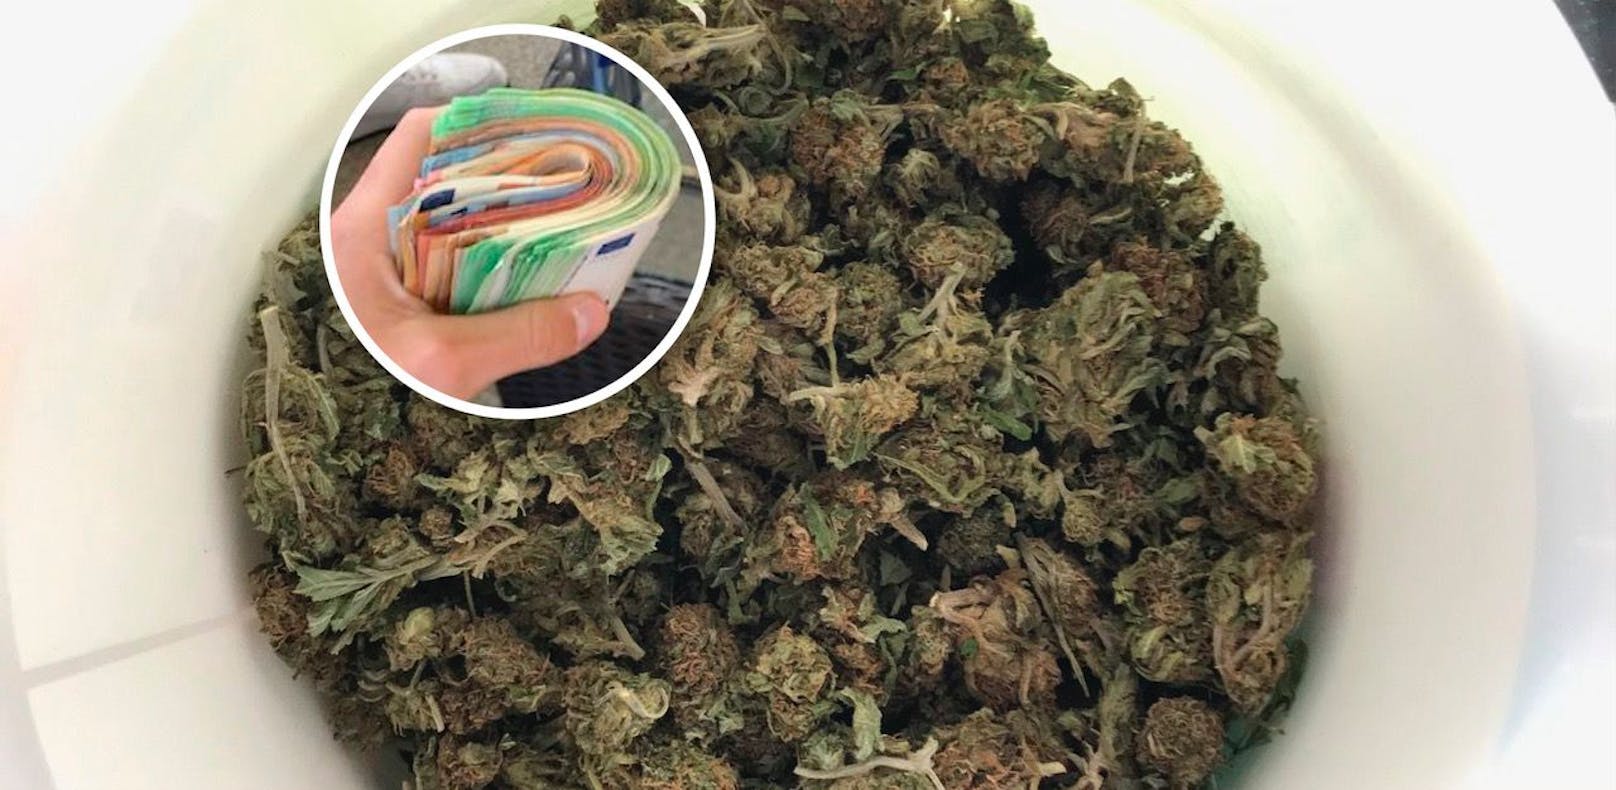 Der 18-jährige Schüler verkaufte laut Polizei Cannabis, Ecstasy und Kokain an Jugendliche.